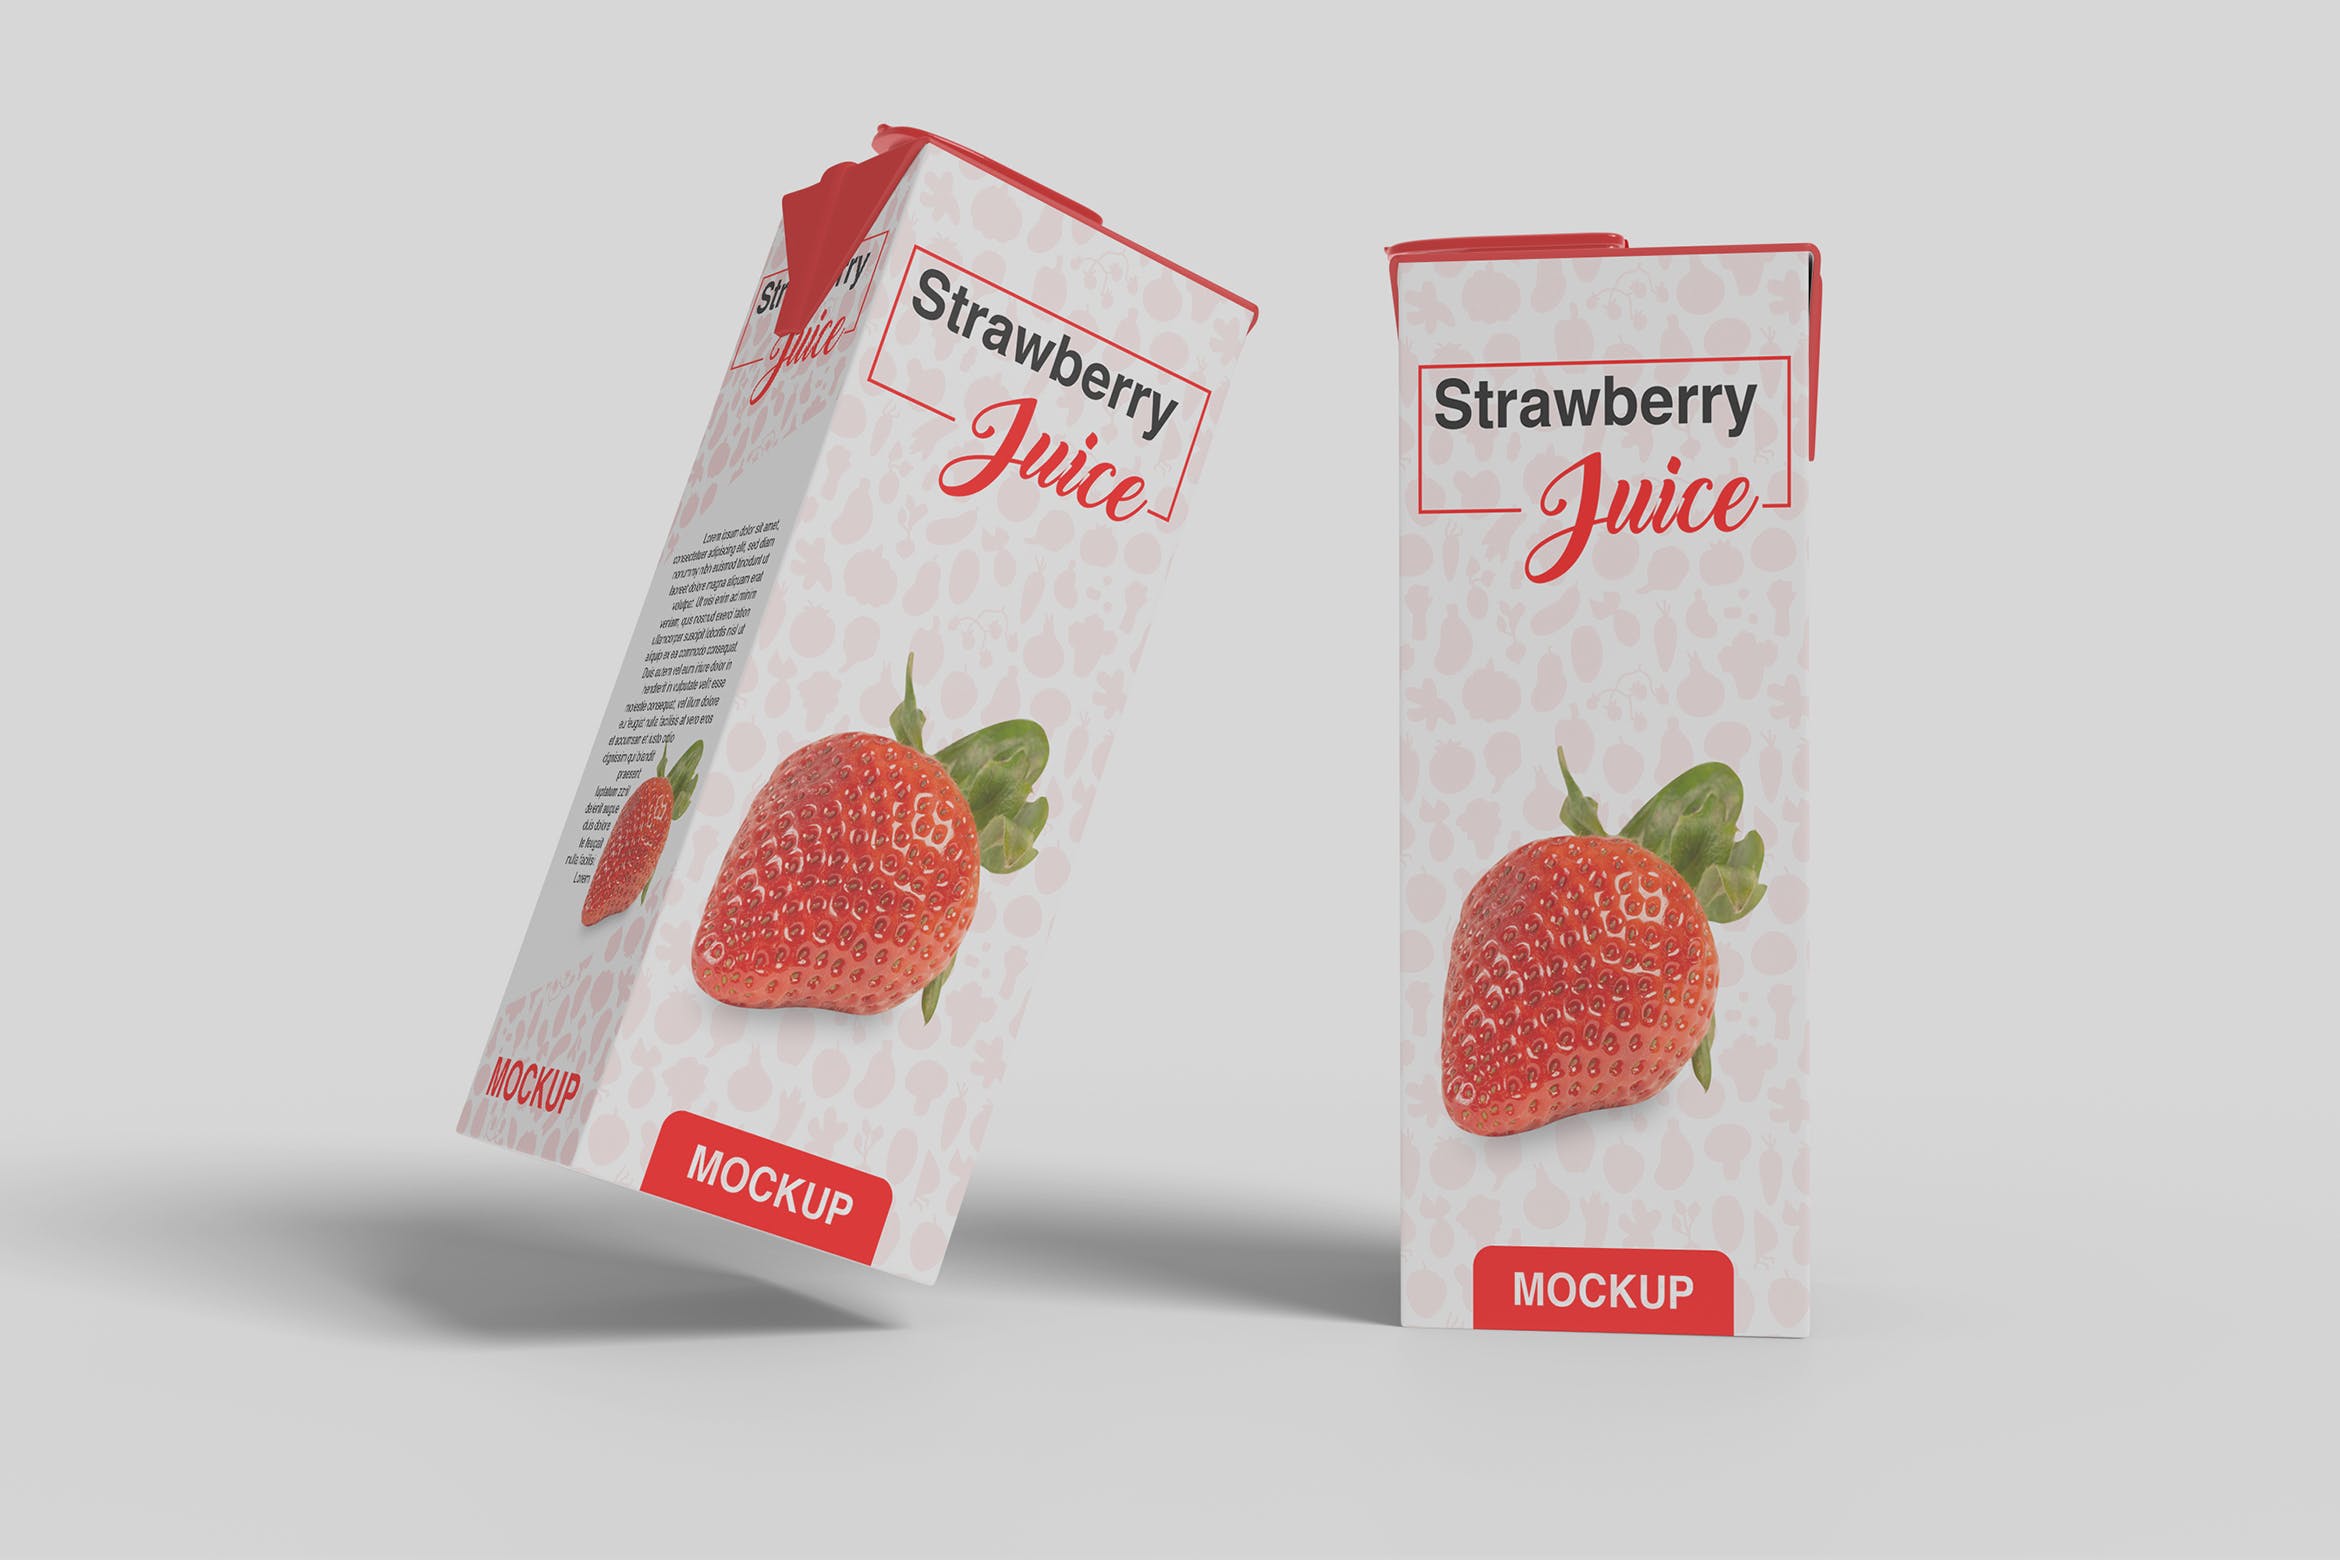 果汁盒包装外观设计第一素材精选模板 Juice Box Mockup插图